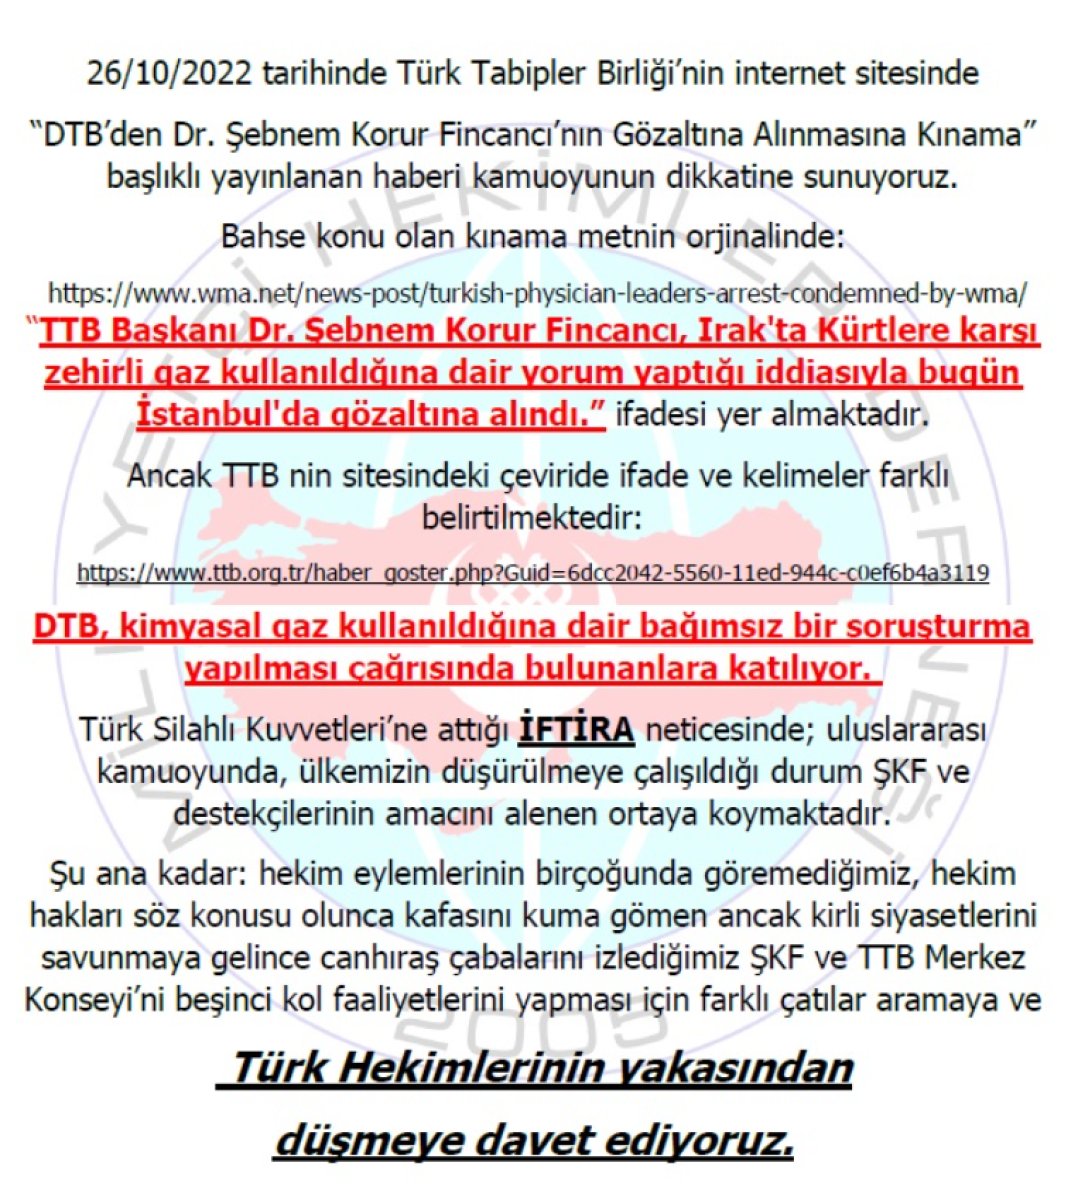 Milliyetçi Hekimler Derneği nden TTB ye: Türk Hekimlerinin yakasından düşün artık #4